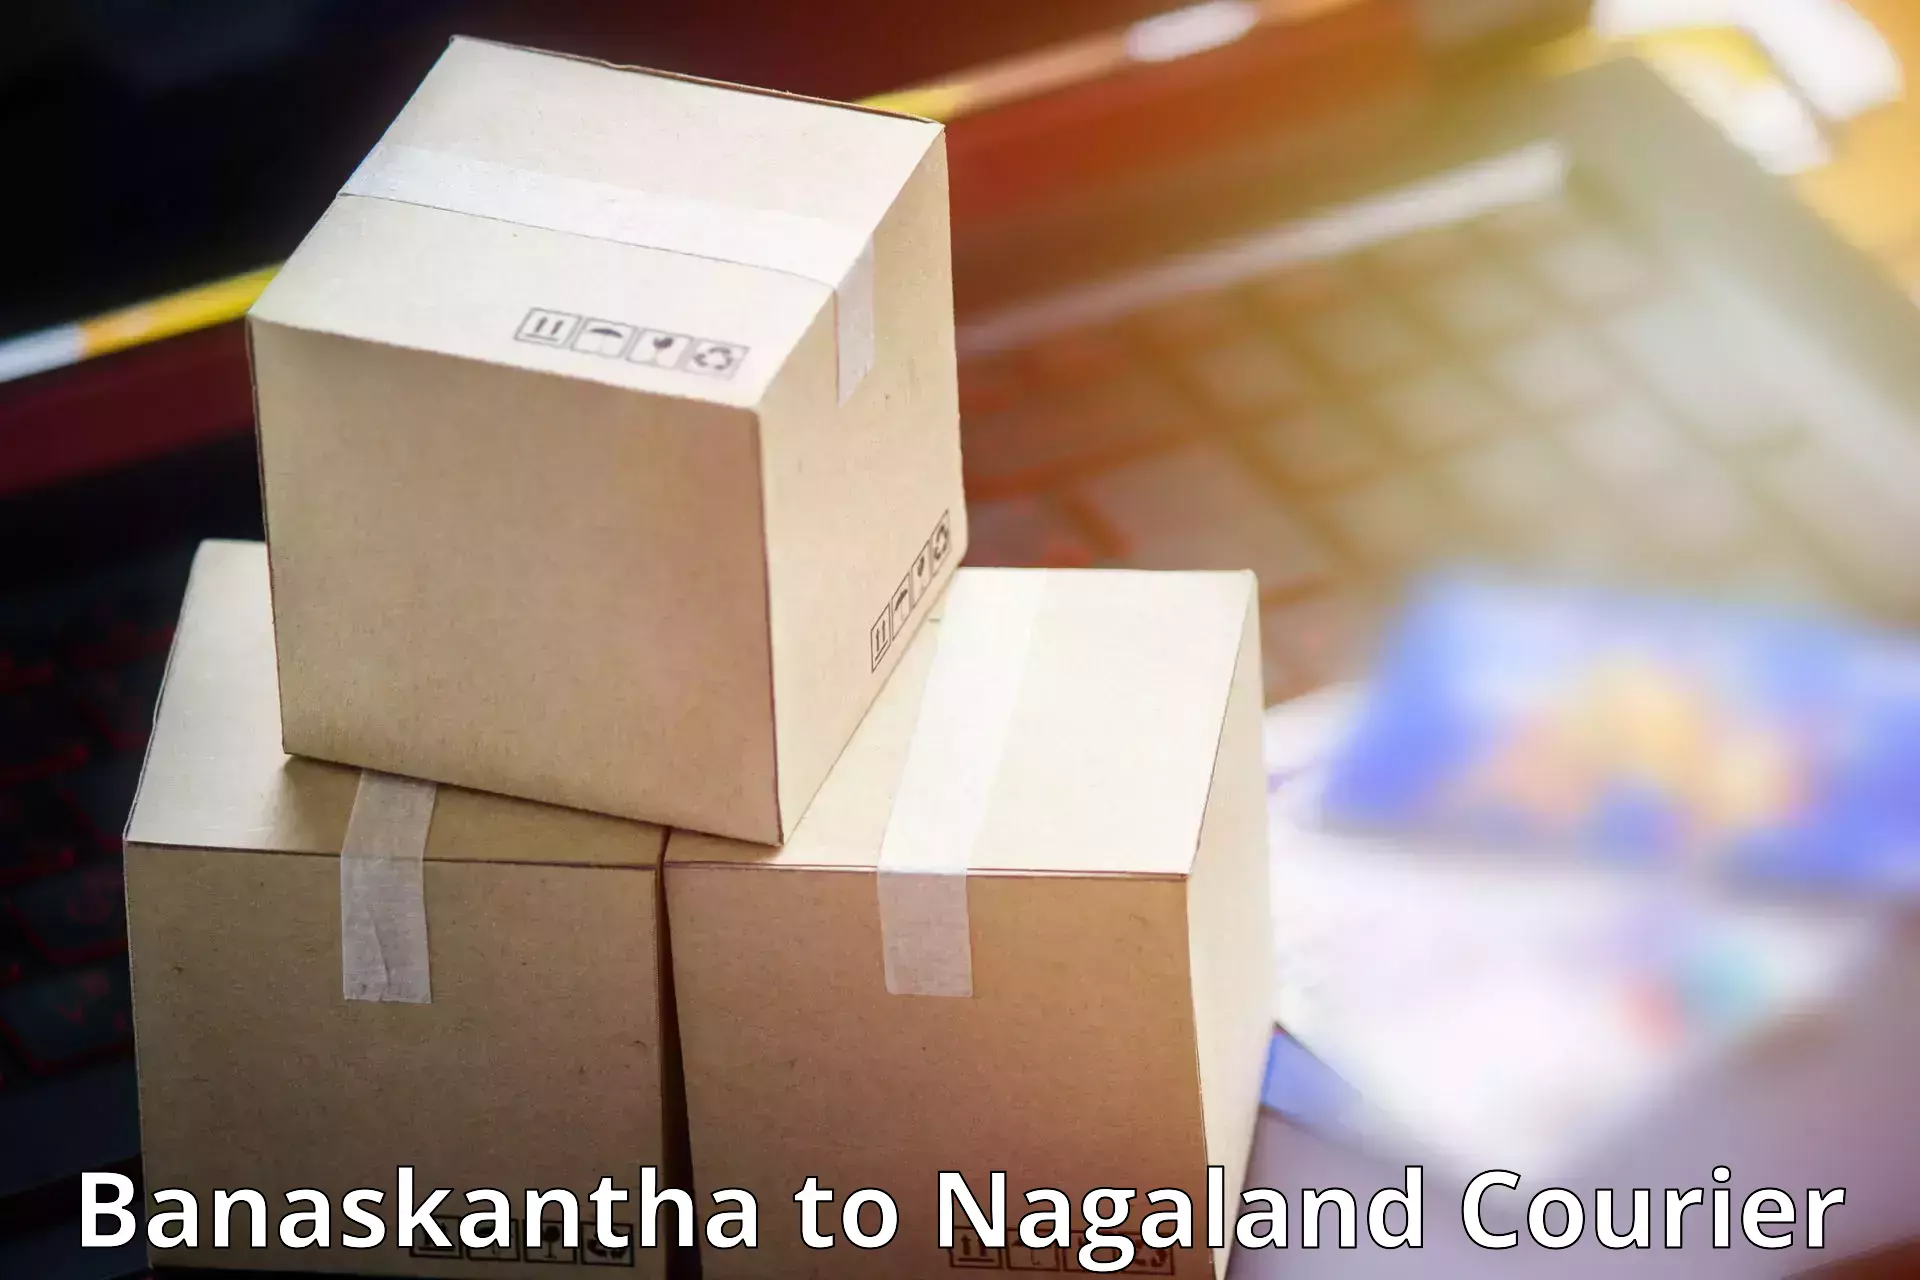 Expedited shipping methods Banaskantha to Phek